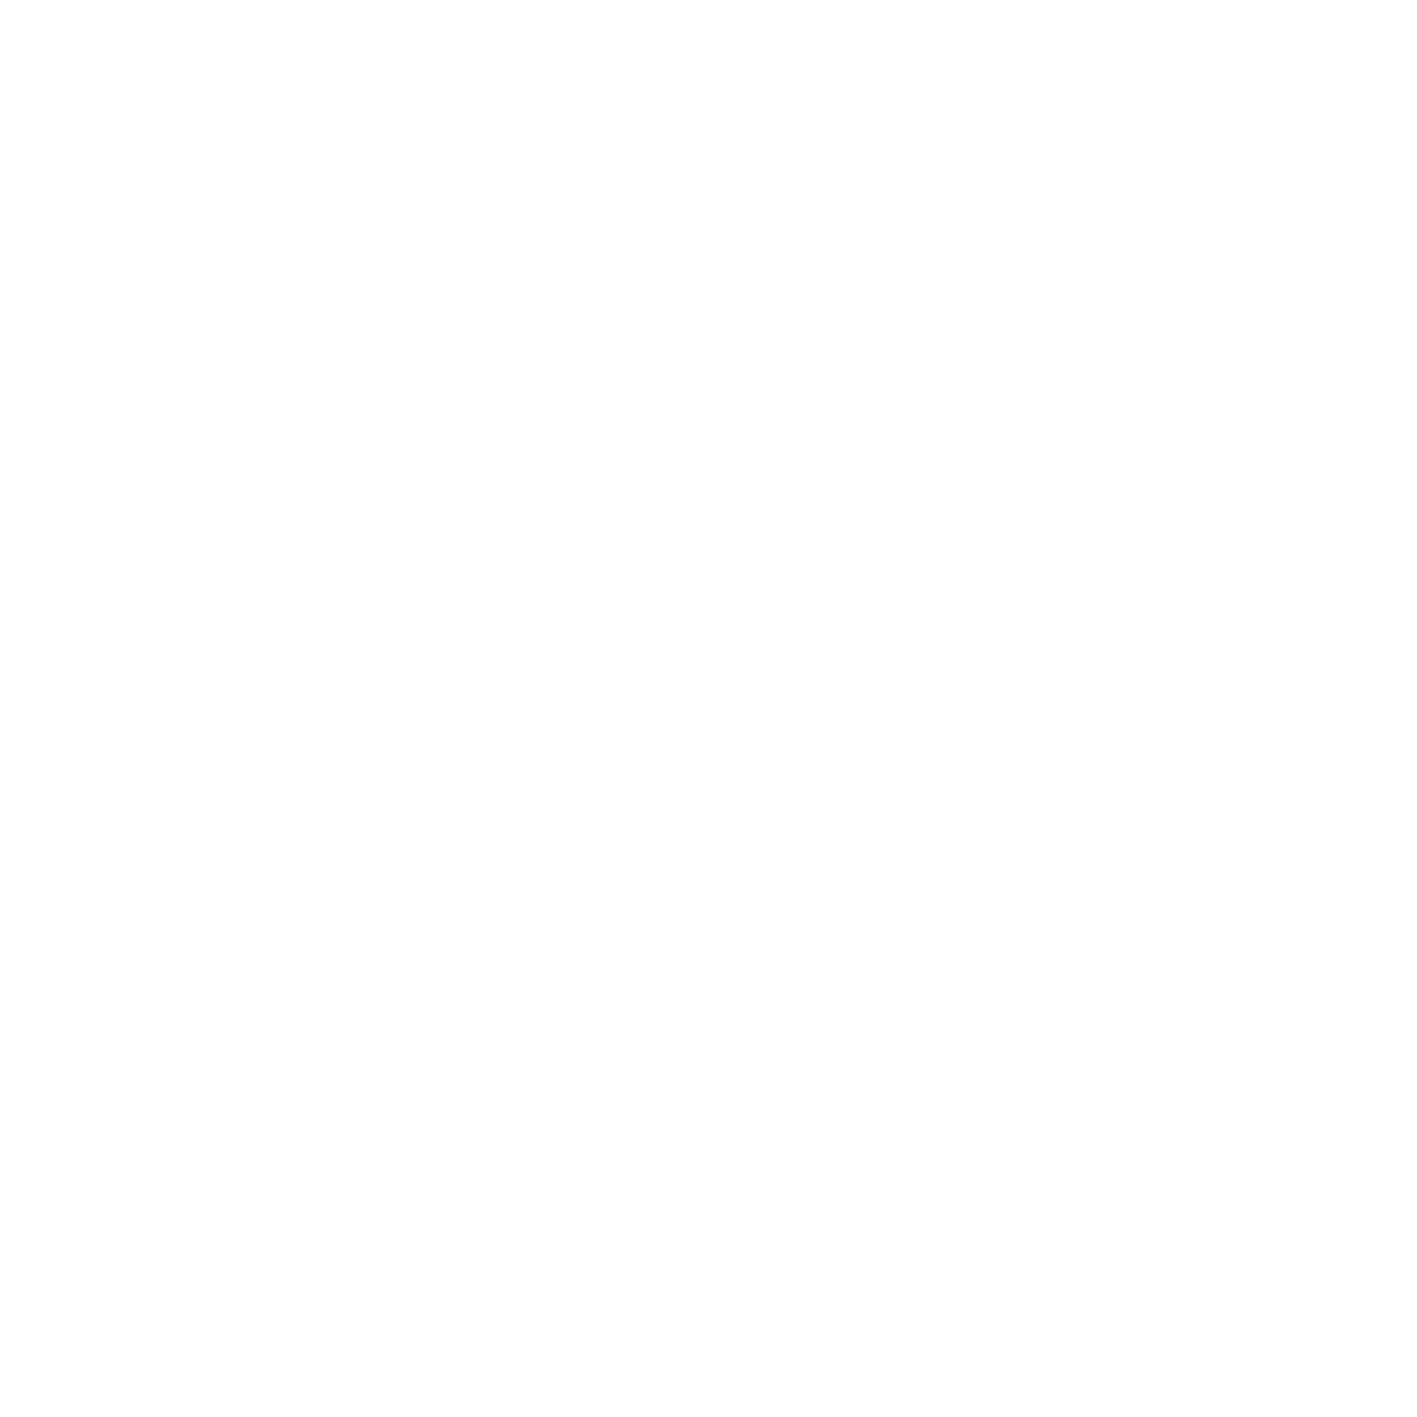 Lily Breizh Truck à Brech vous propose des crêpes, des galettes de blé noir, des cookies et du caramel au beurre salé. Privatisation